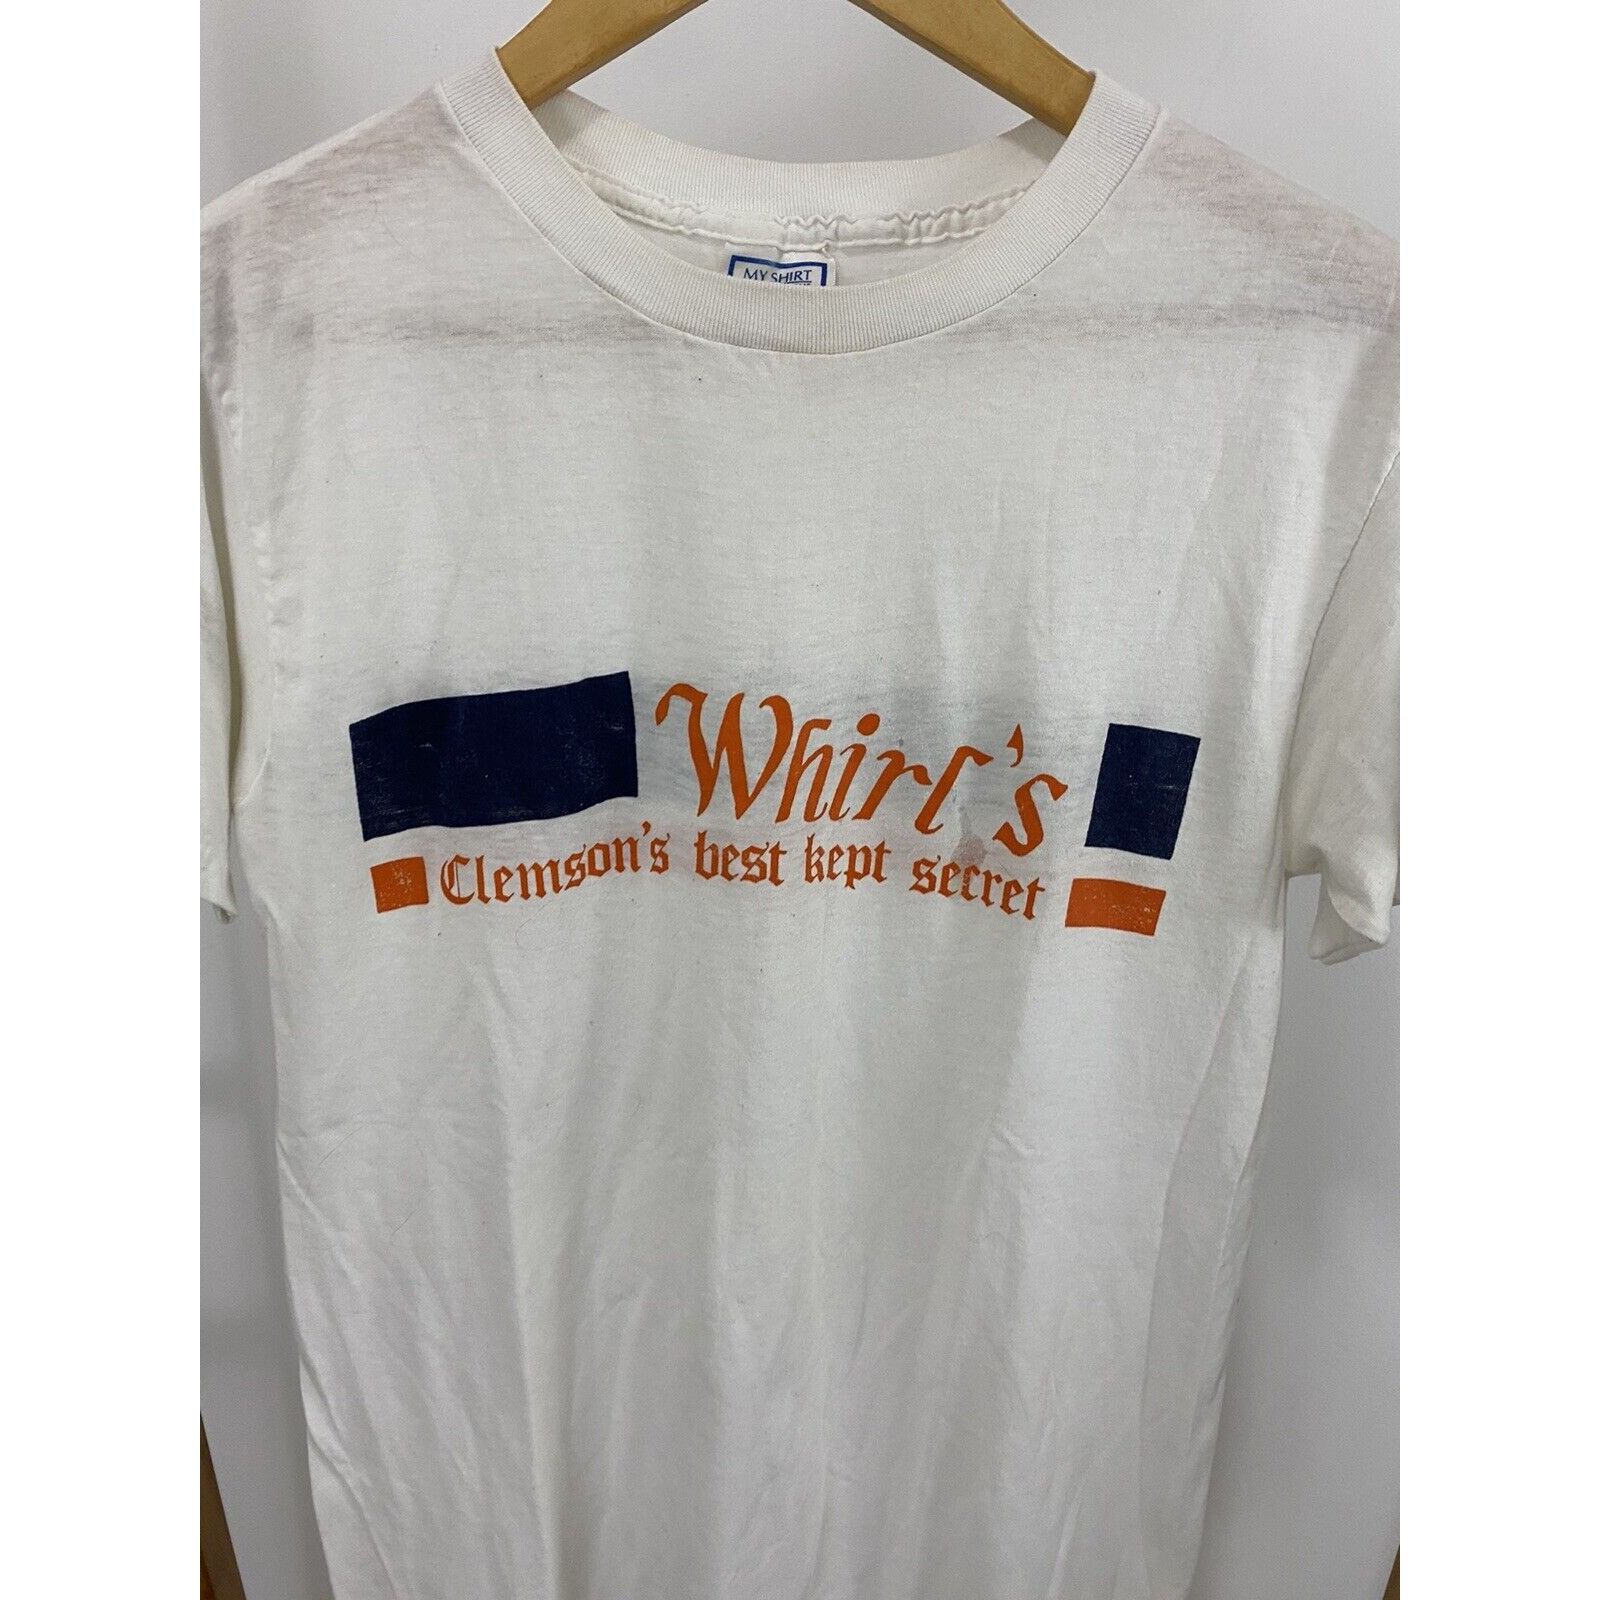 Vintage VTG 80s Whirl's Best Kept Secret Clemson Burnout T-Shirt L Size US L / EU 52-54 / 3 - 4 Thumbnail